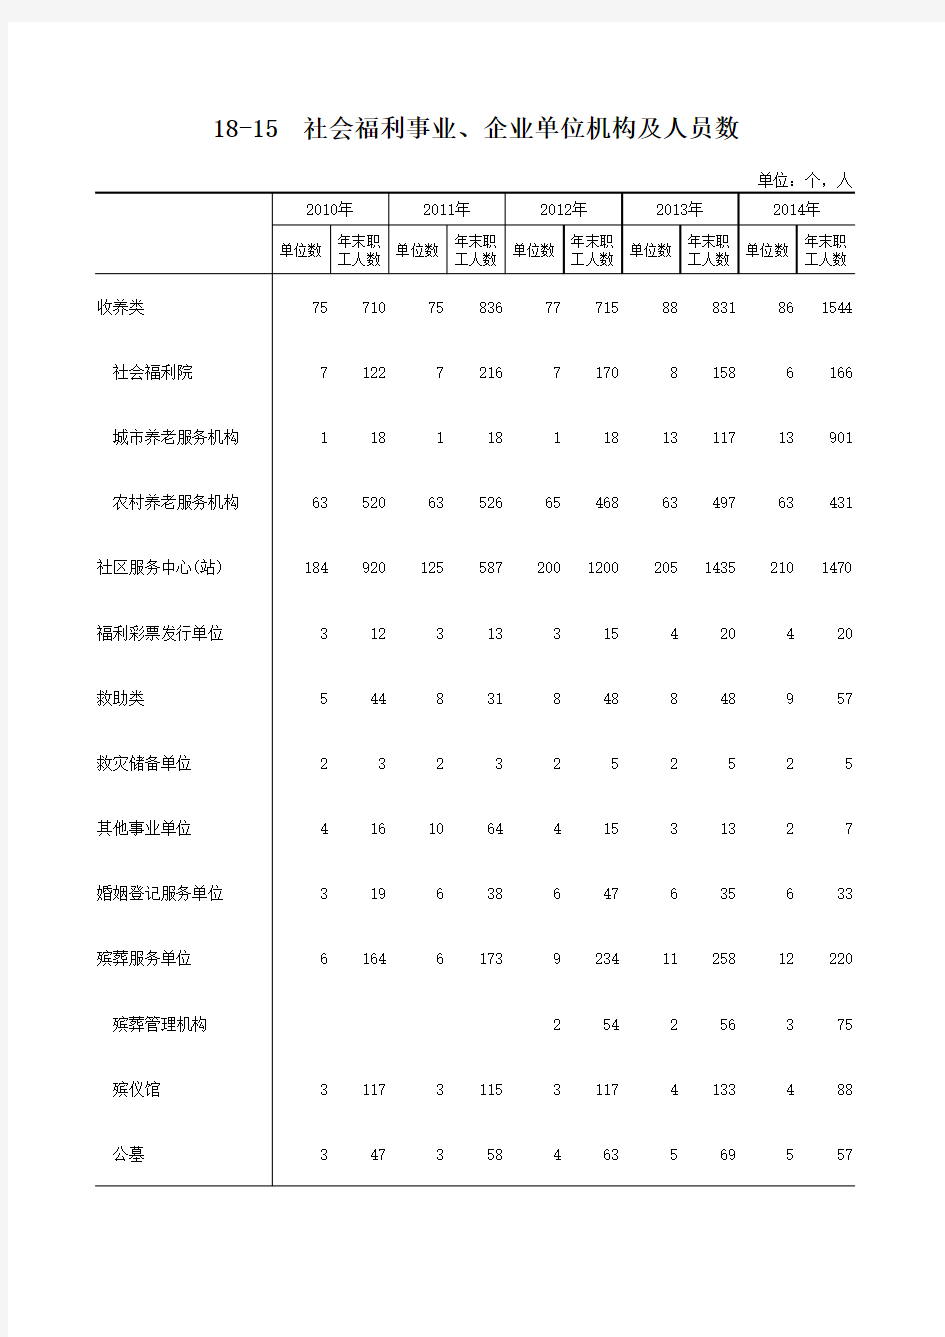 荆门市统计年鉴社会经济发展指标：18-15  社会福利事业、企业单位机构及人员数